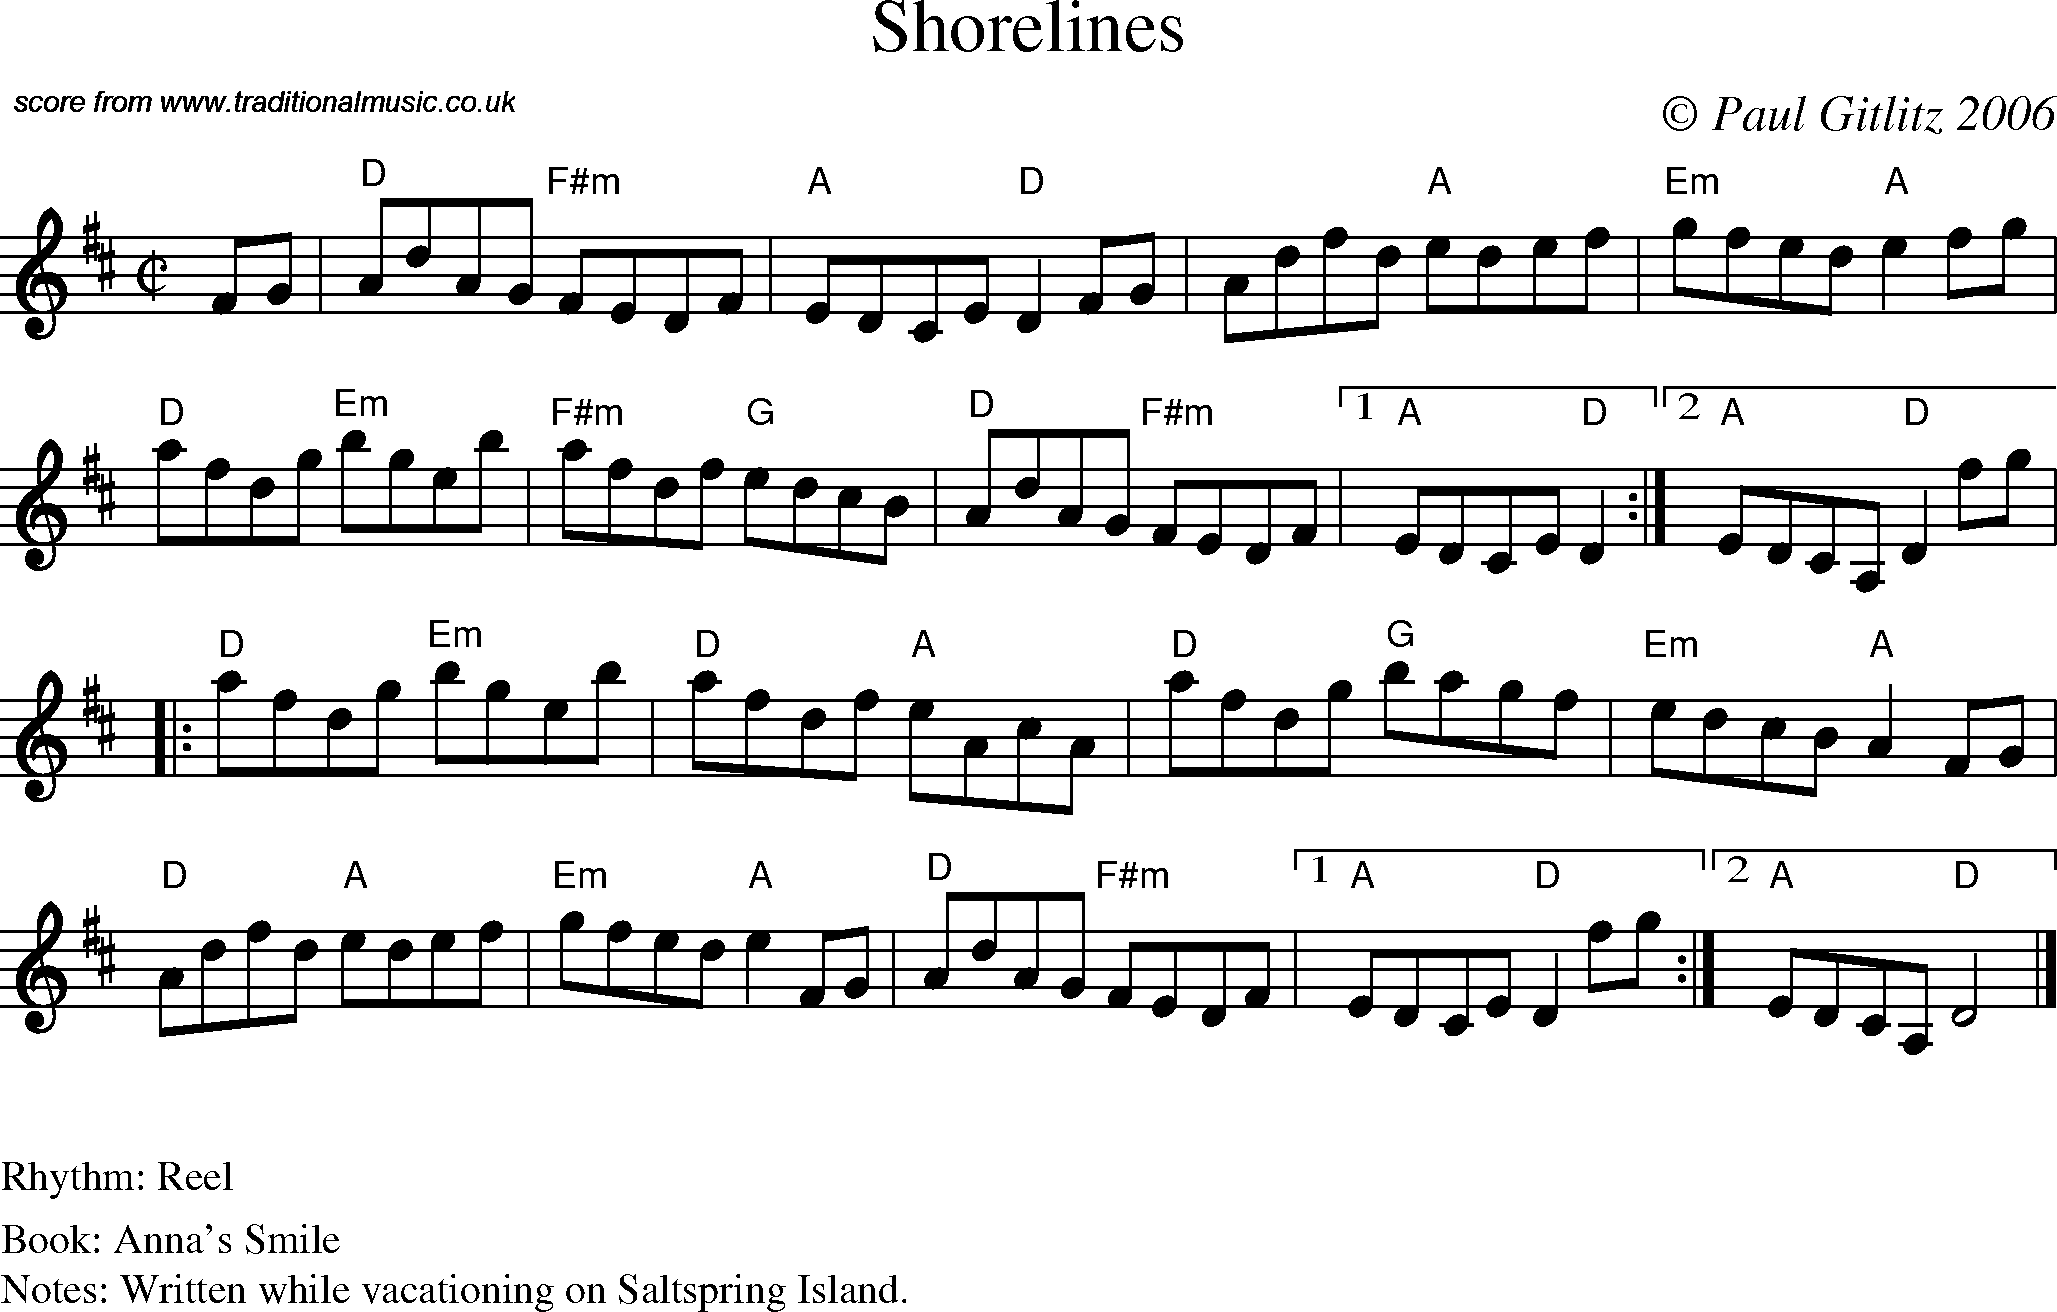 Sheet Music Score for Reel - Shorelines